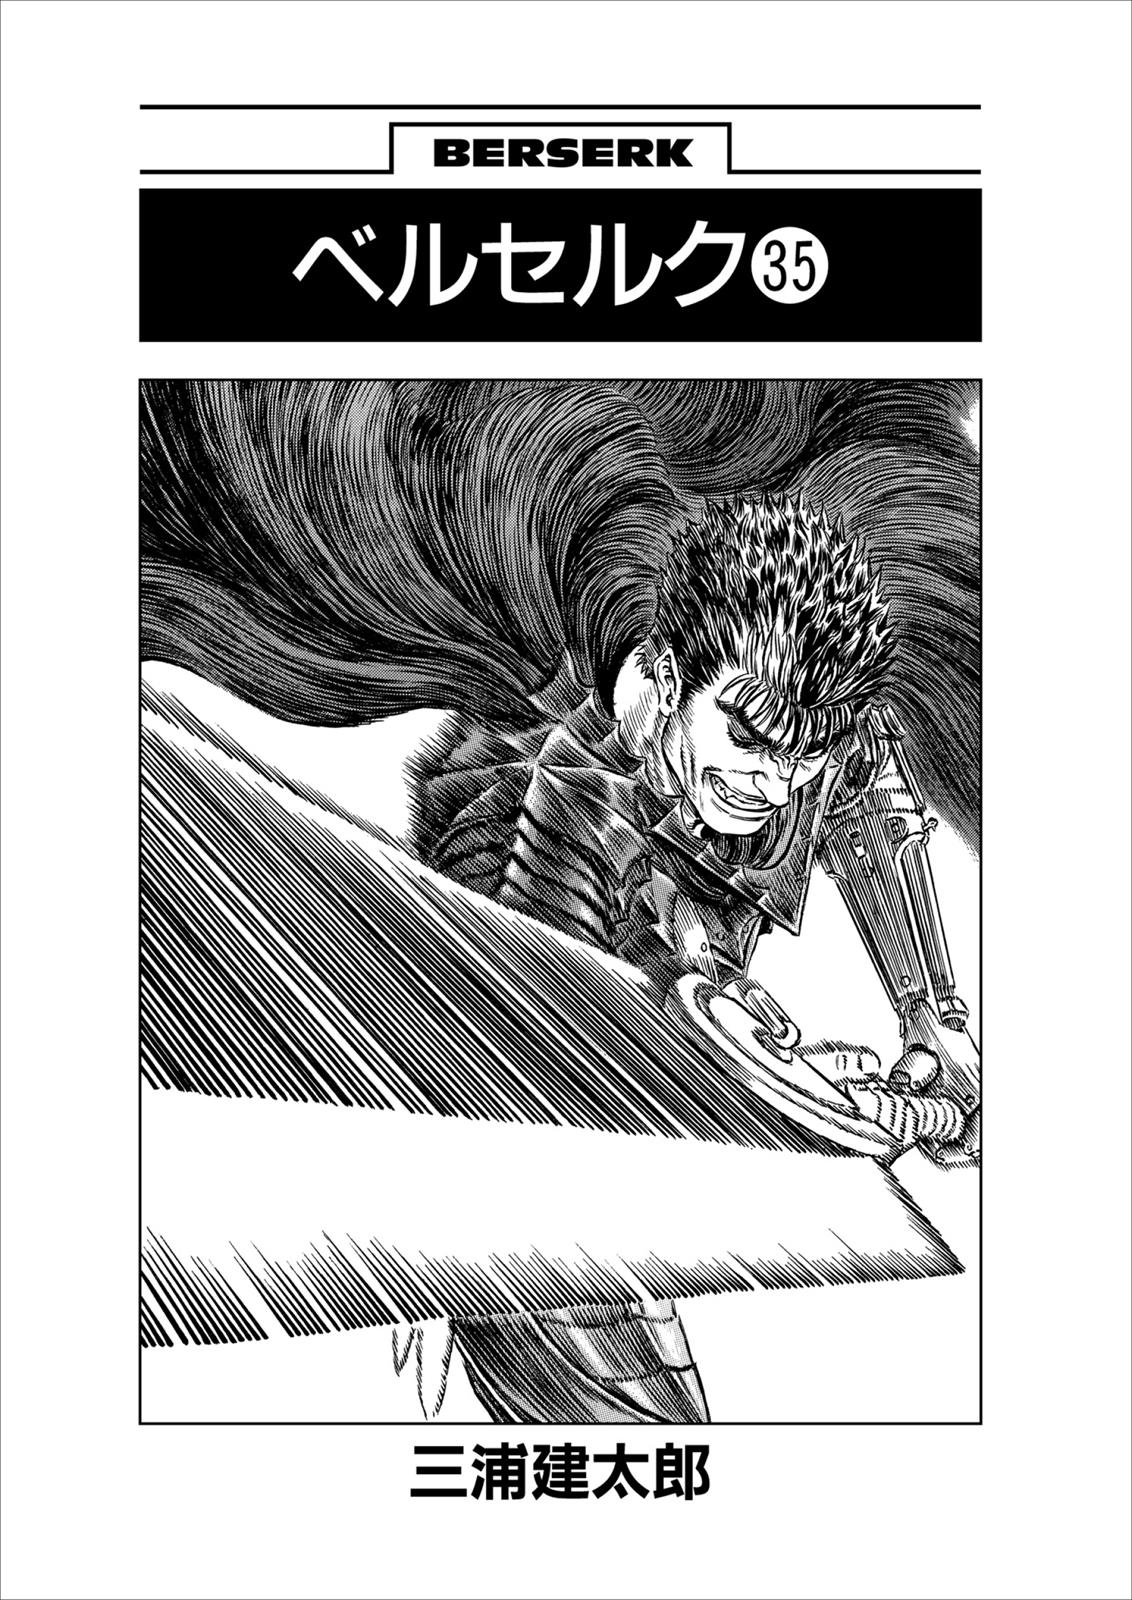 Berserk Manga Chapter 307 image 07